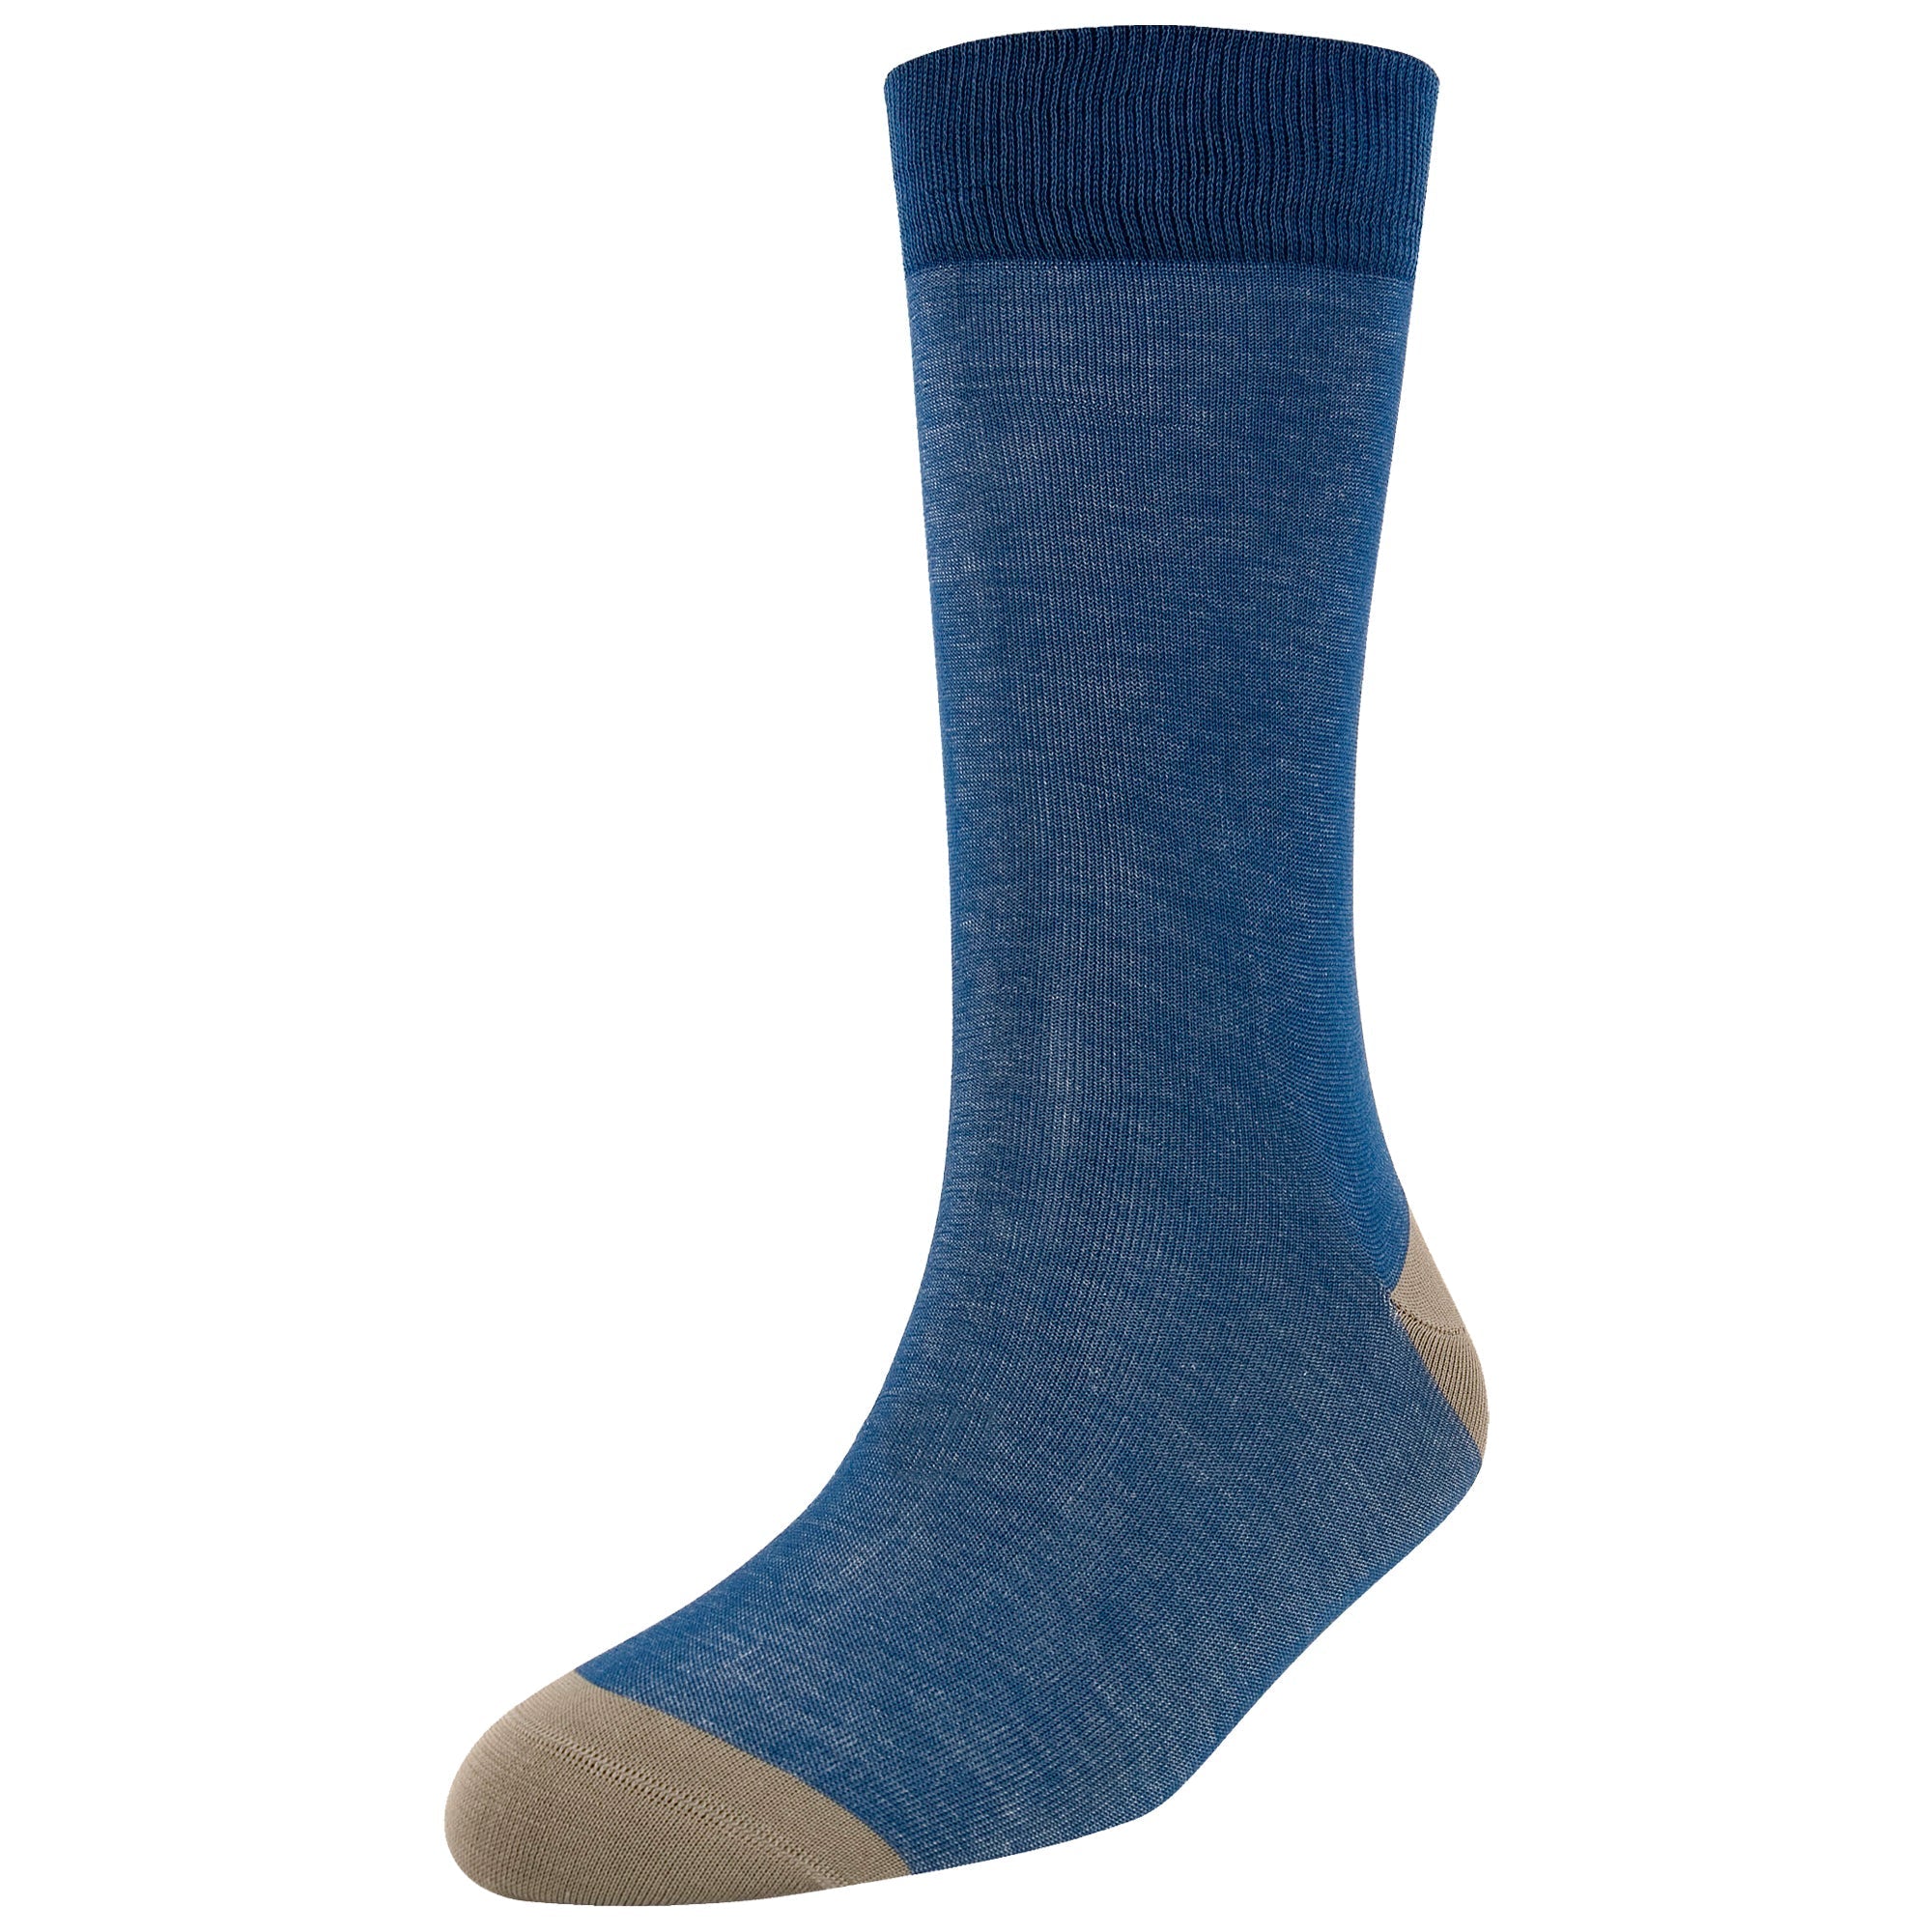 Men's Fashion Denim Standard Length Socks